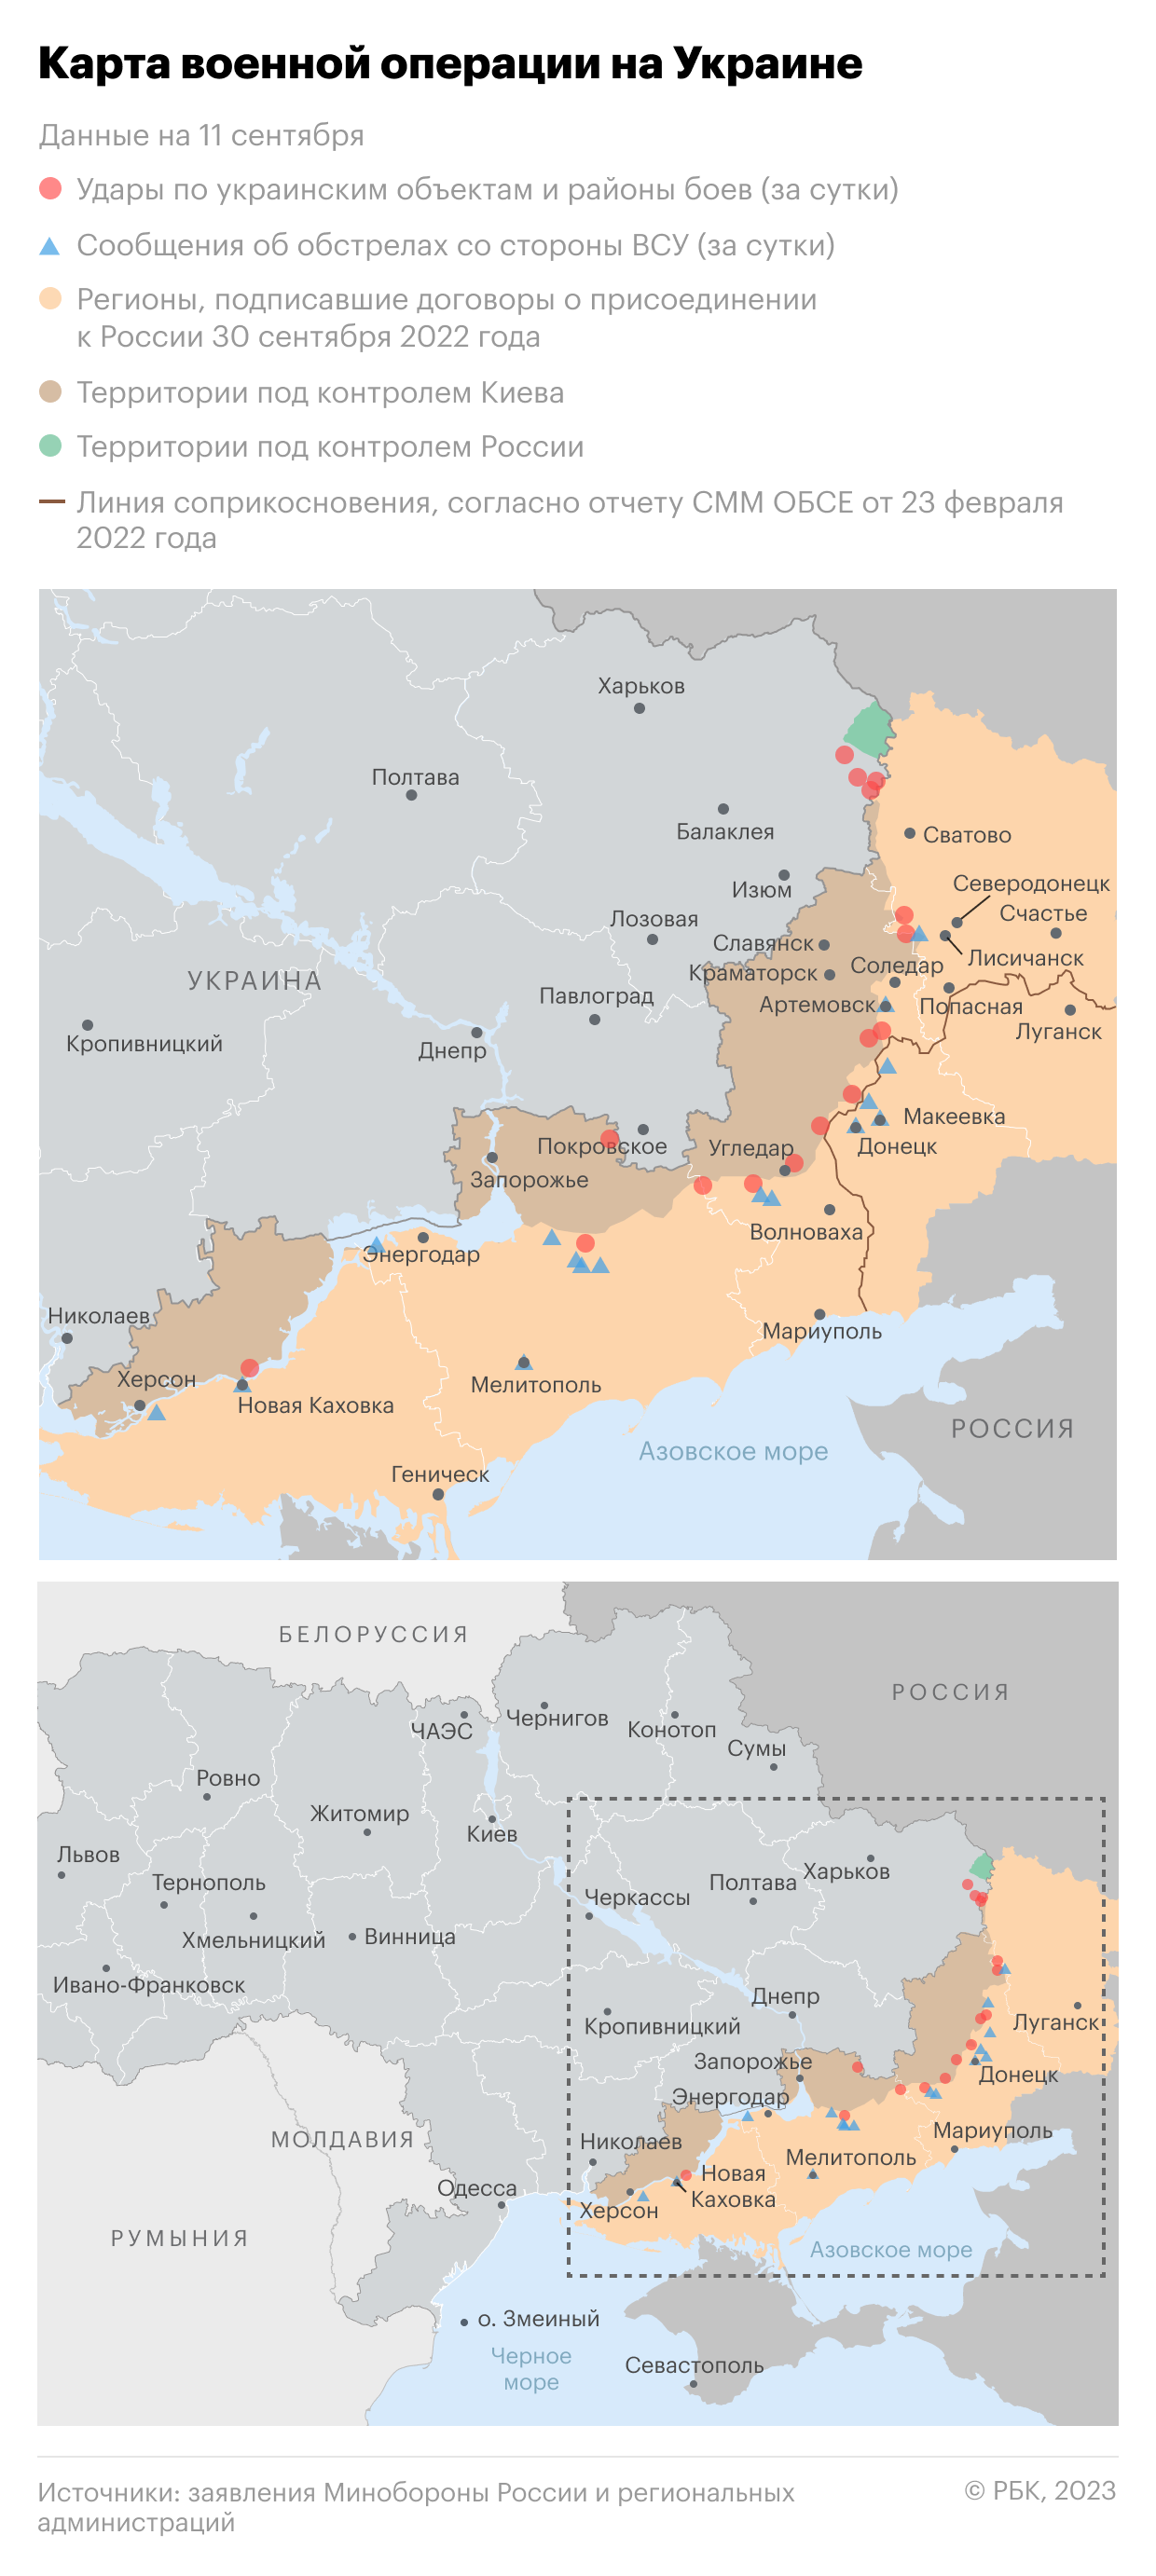 Военная операция на Украине. Карта на 11 сентября